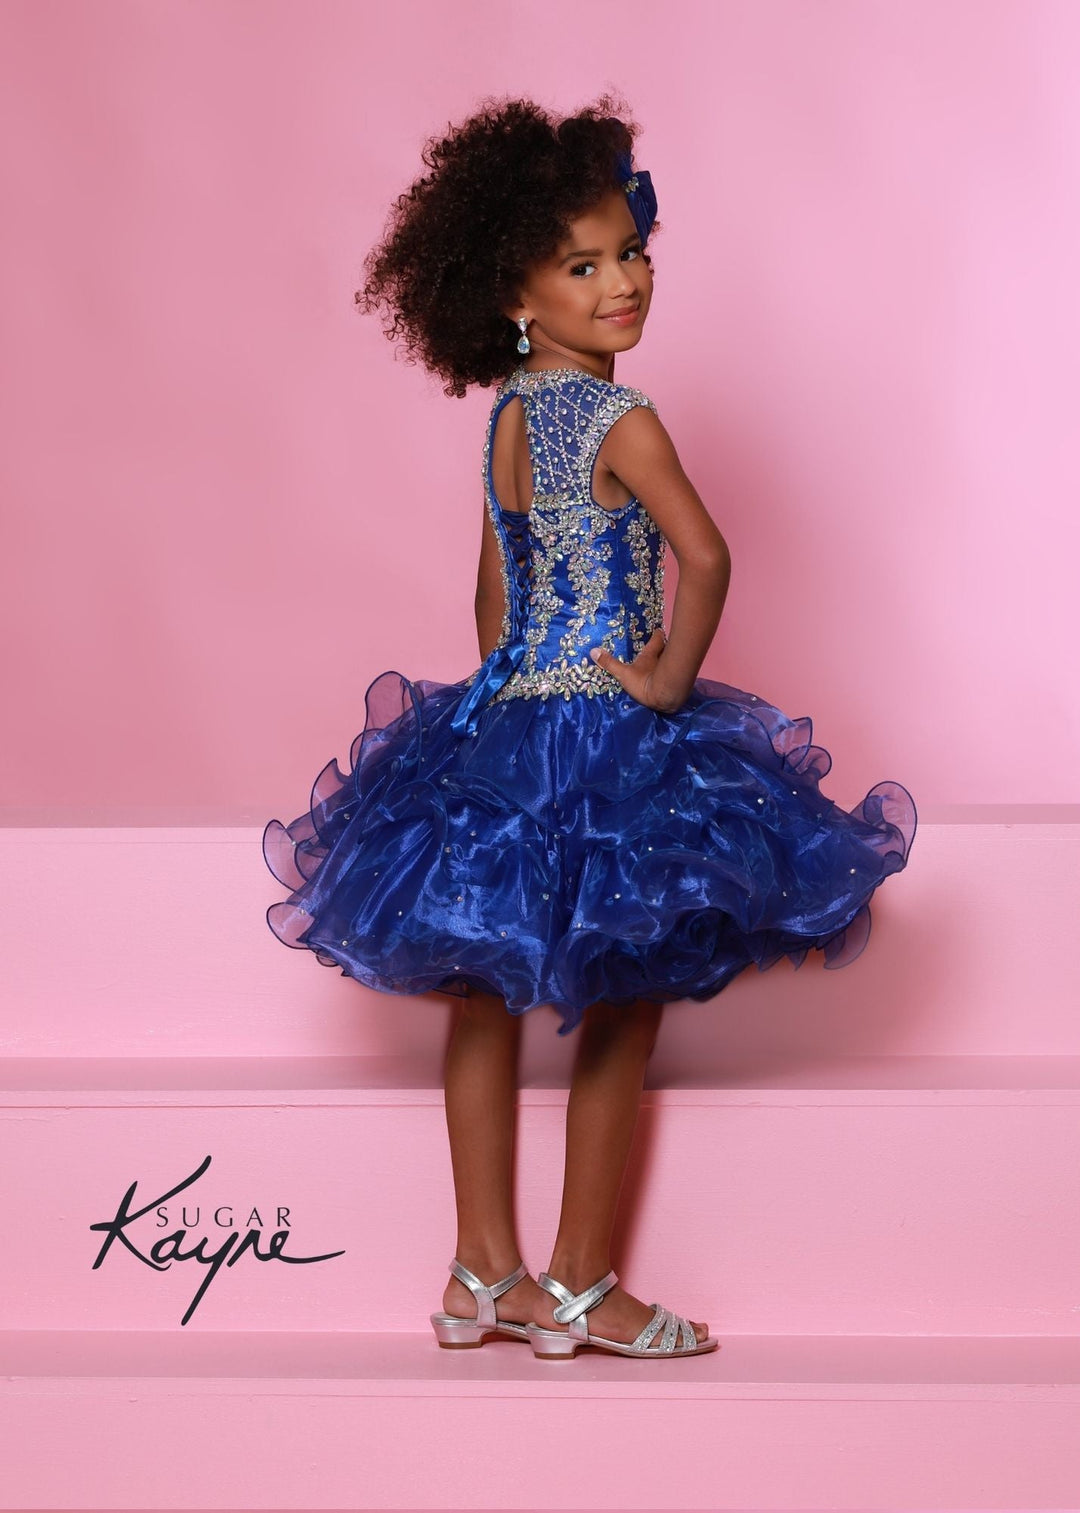 Sugar Kayne C210 Short Ruffle Girls Cupcake Pageant Dress Corset Toddler Baby Formal Gown - FOSTANI